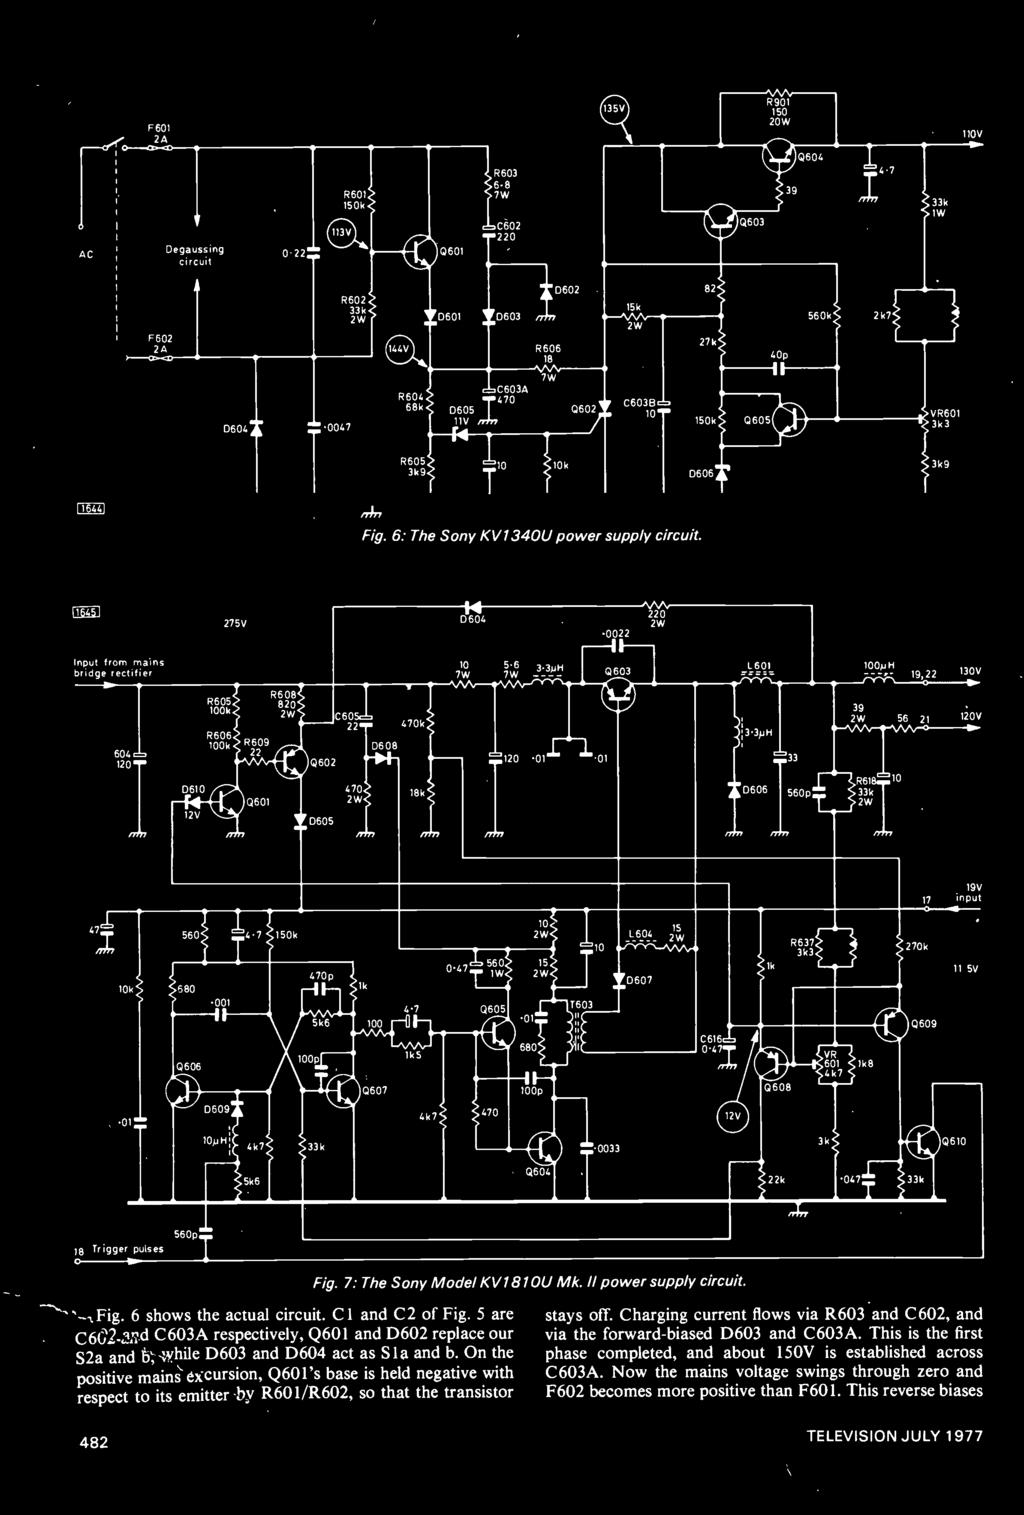 1 1 _04; AC F 601 2A Degaussing circuit 0.22: R601 150k R603 6.8 7W C602.0220 Q603 R901 150 20W 39 Q604 4.